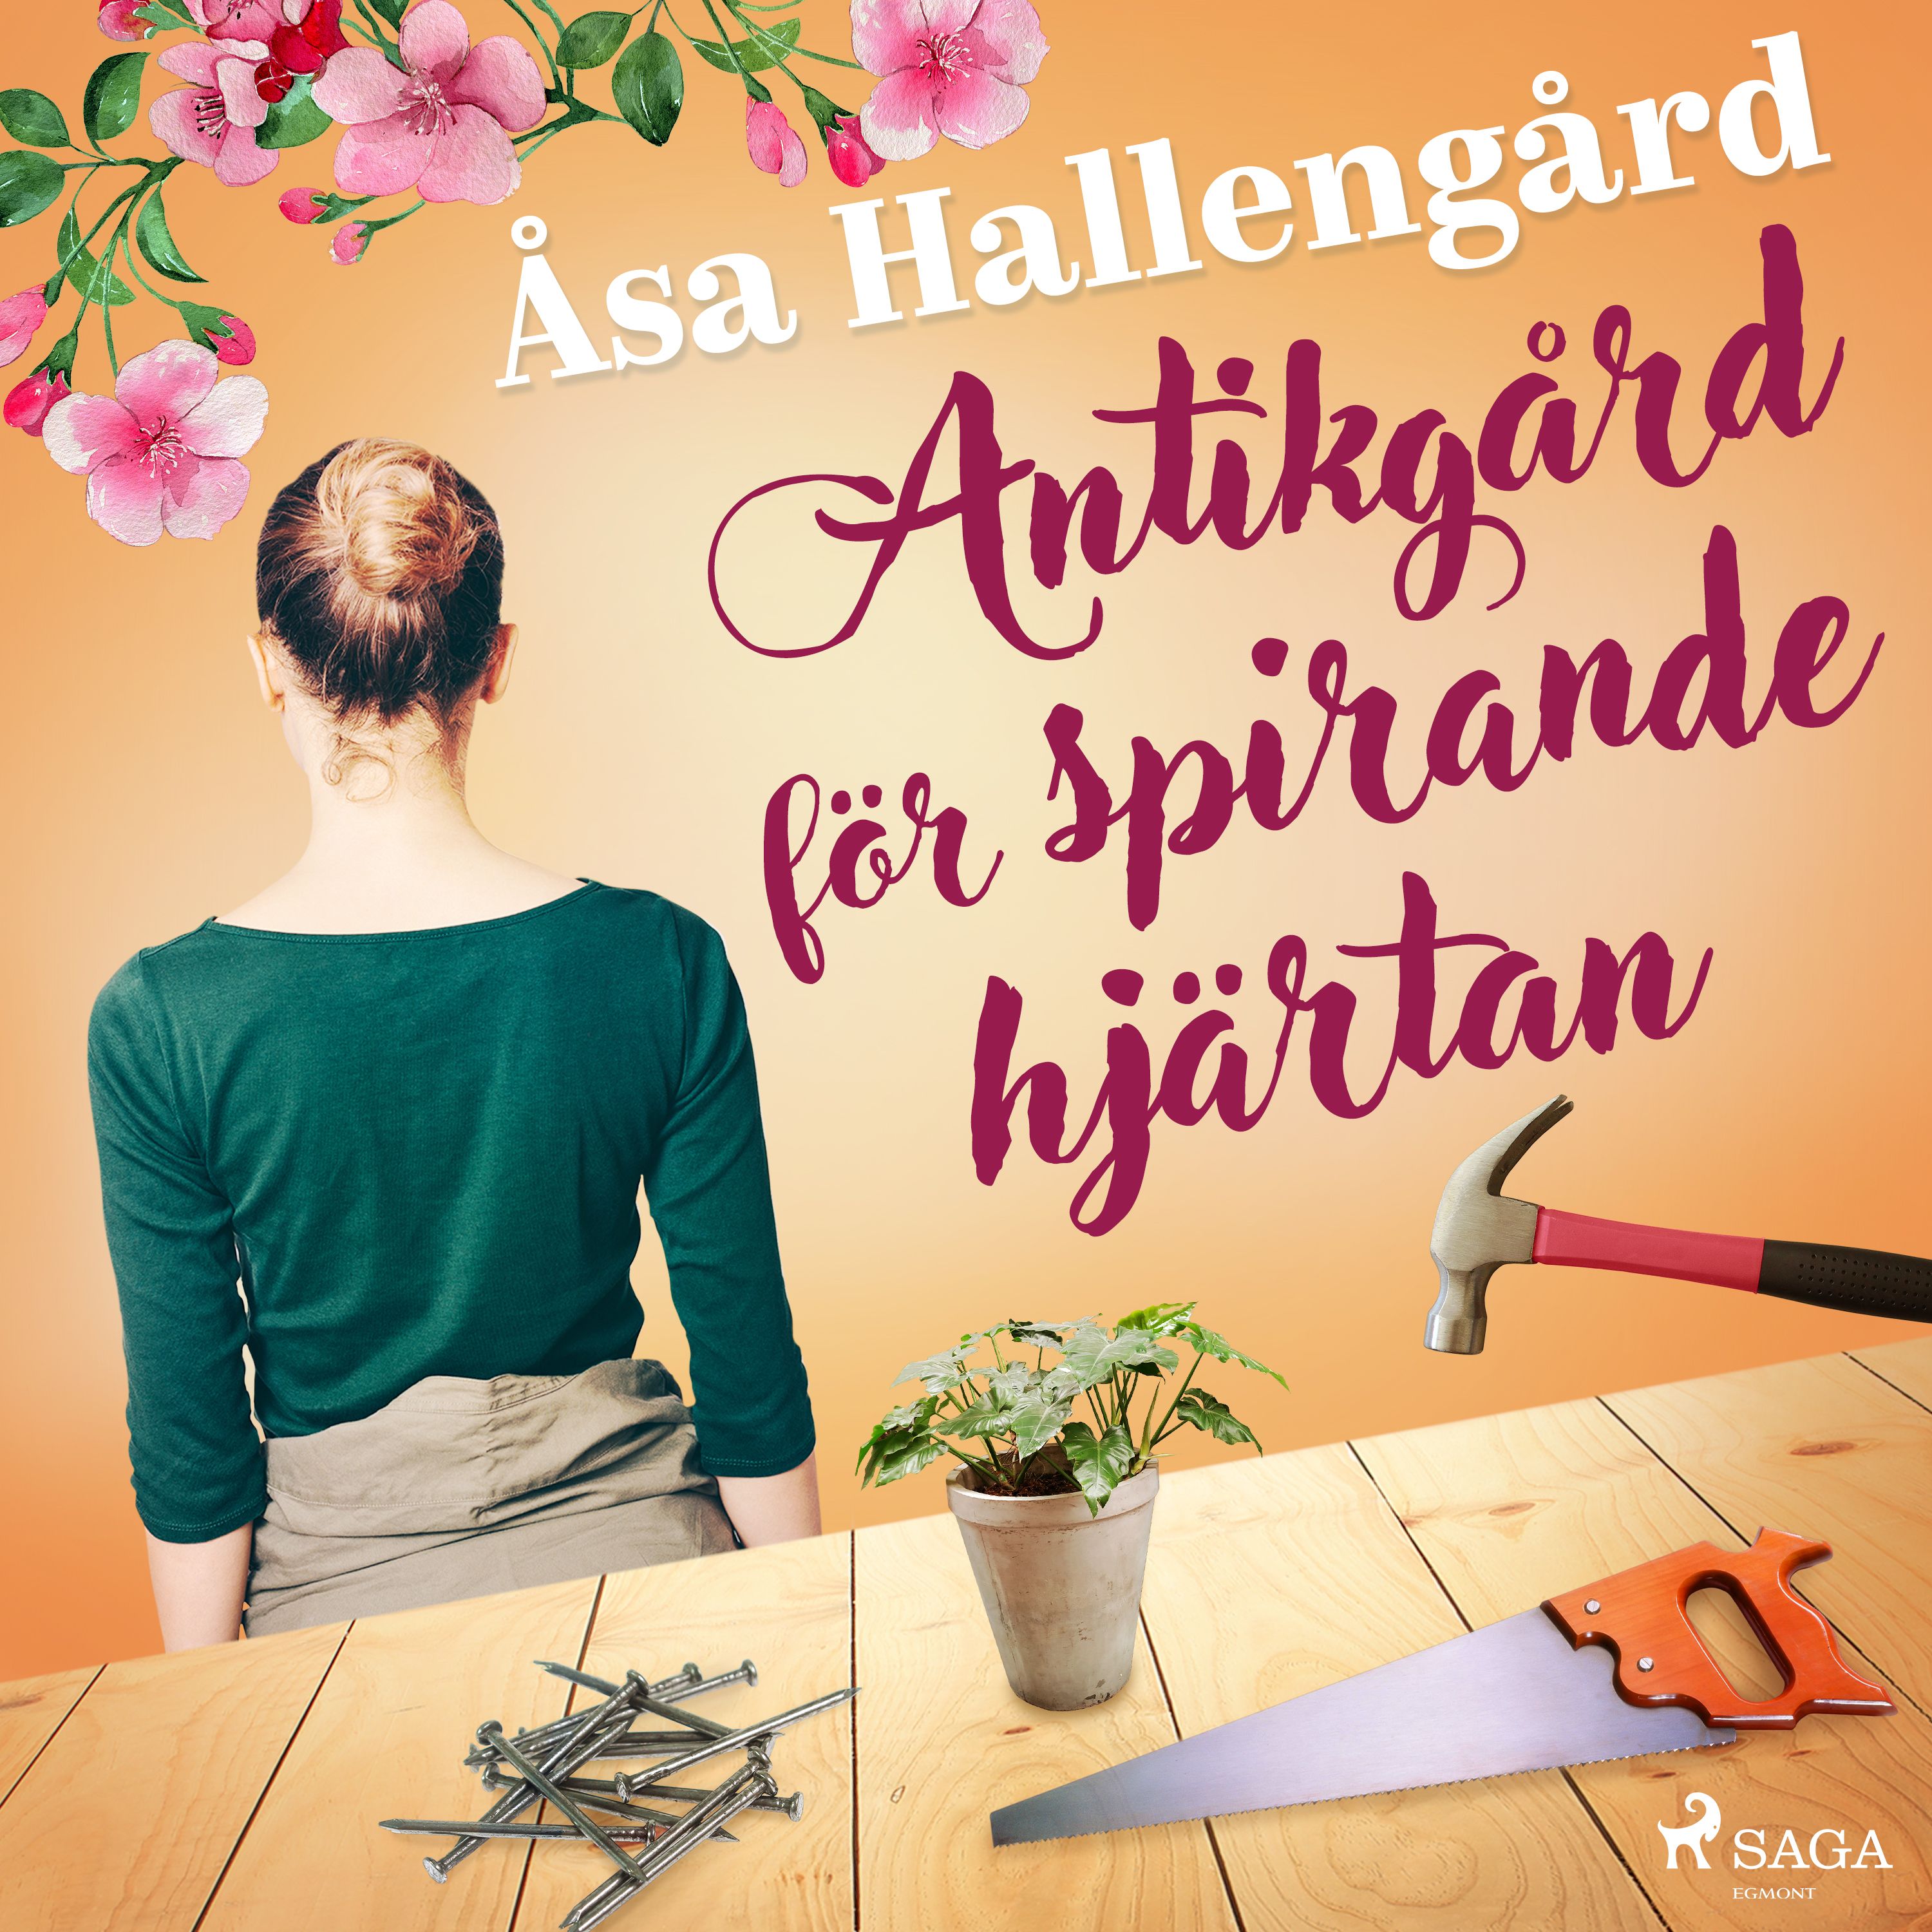 Antikgård för spirande hjärtan, audiobook by Åsa Hallengård